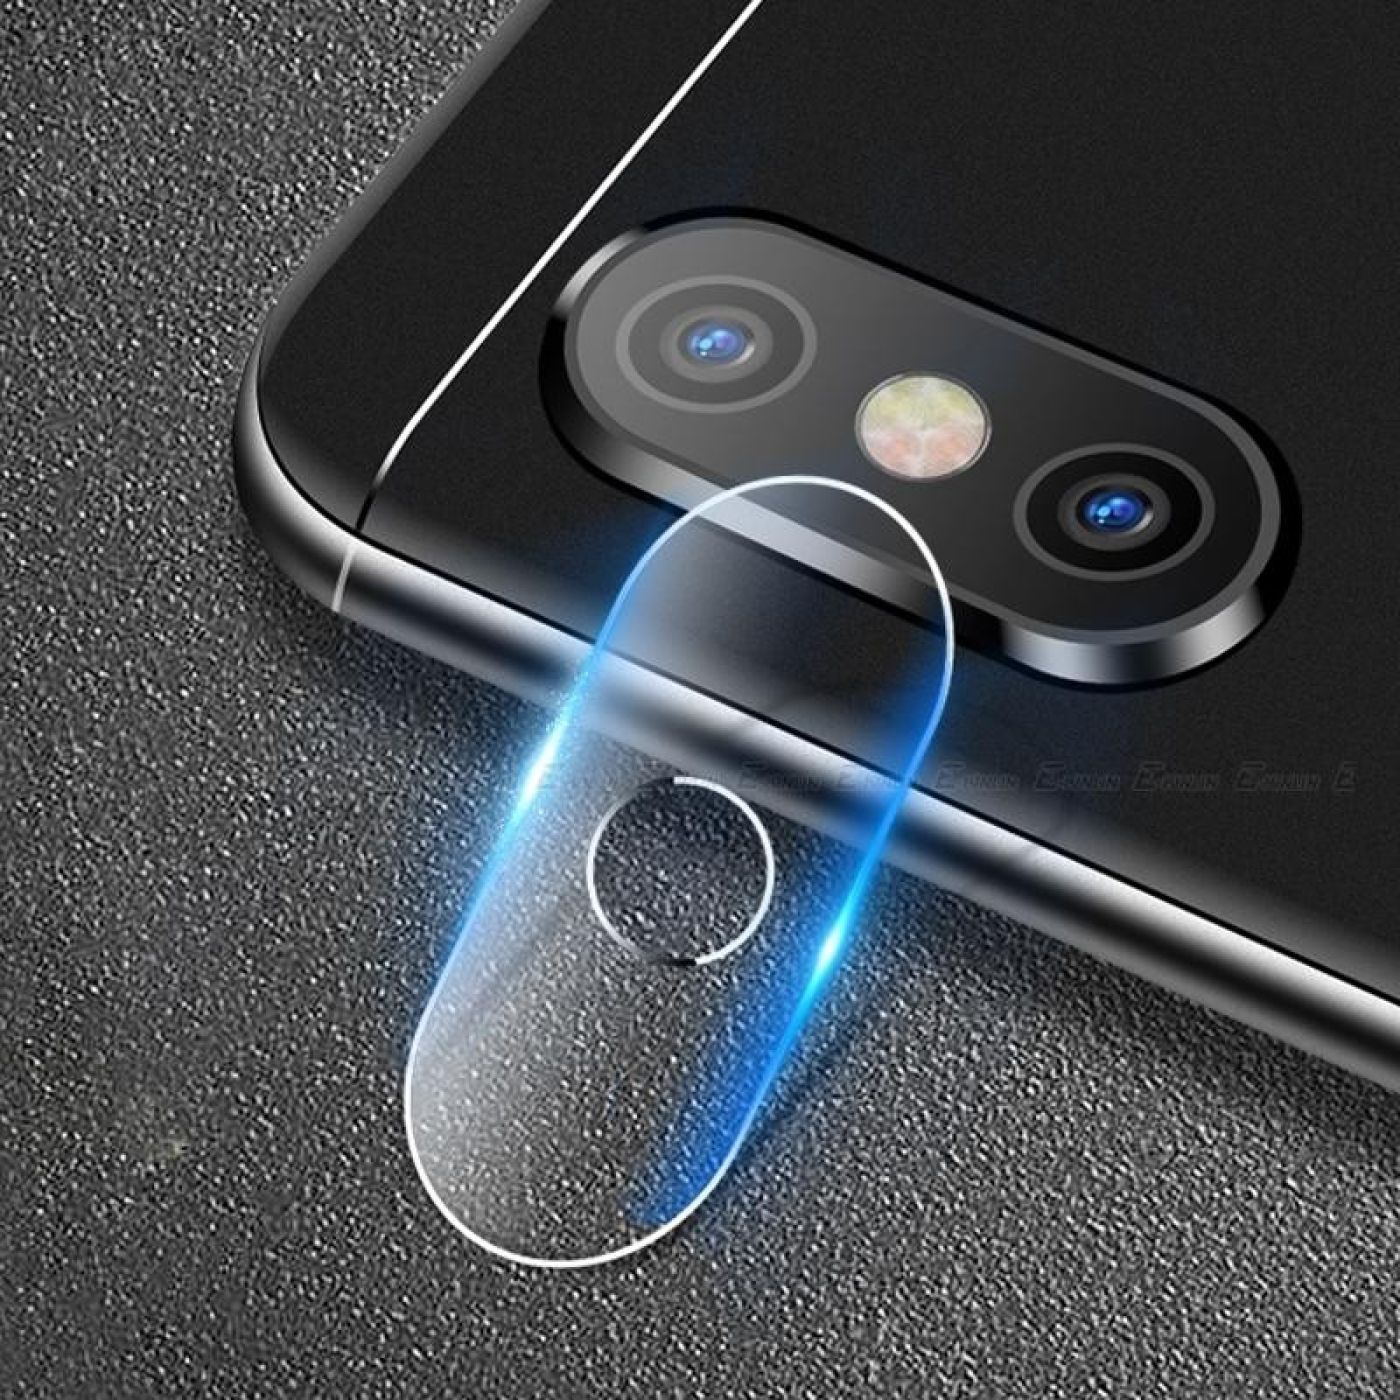 Kính cường lực & vàng bảo vệ camera cho iPhone - hãng TITAN